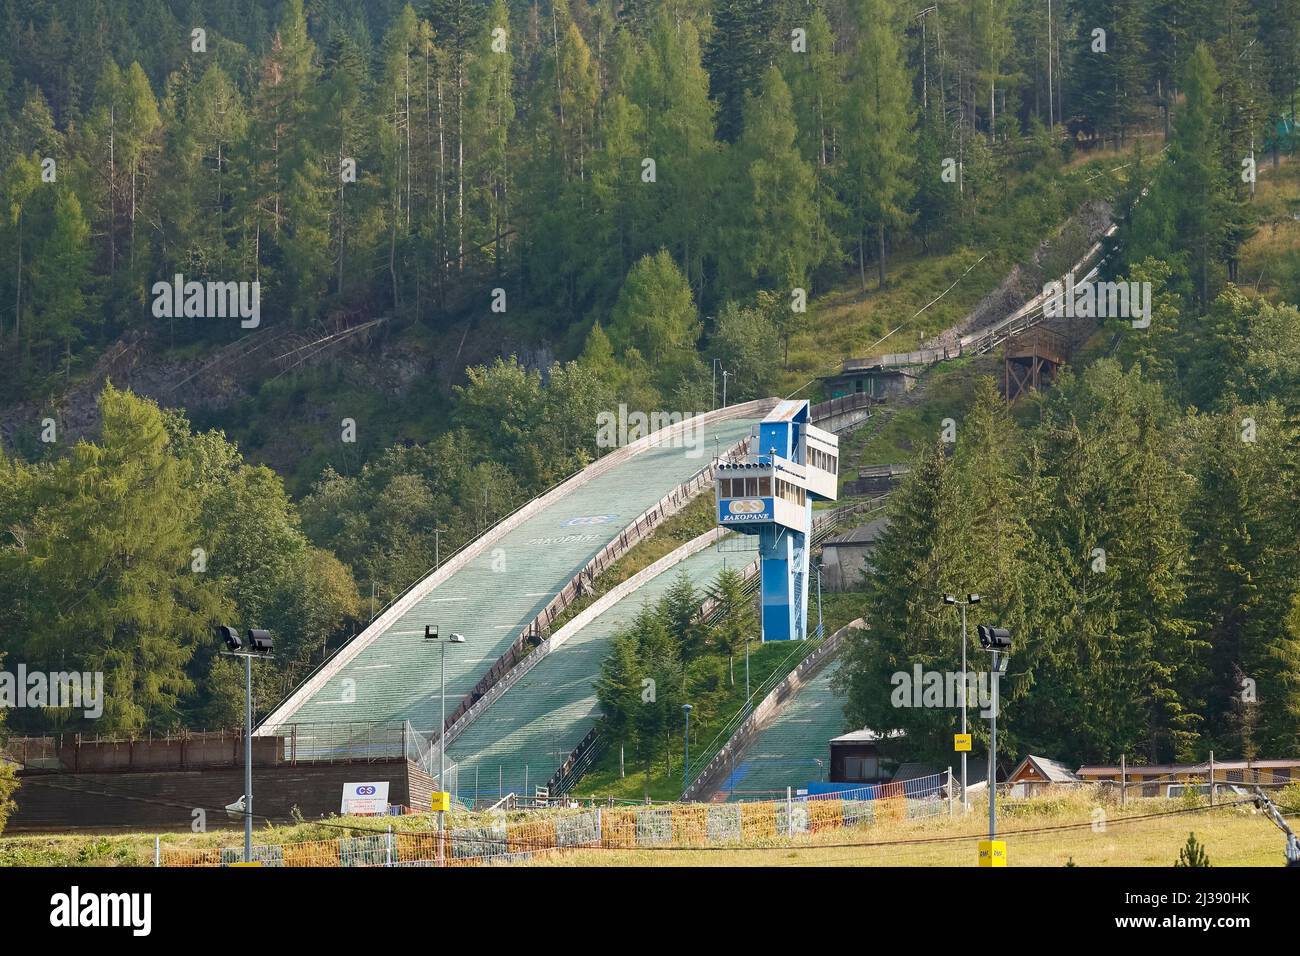 Zakopane, Polonia - 12 settembre 2016: Ski jumping Hill Complex. L'arena sportiva visibile tra gli alberi è stata costruita nel 1950 direttamente sulla montagna Foto Stock